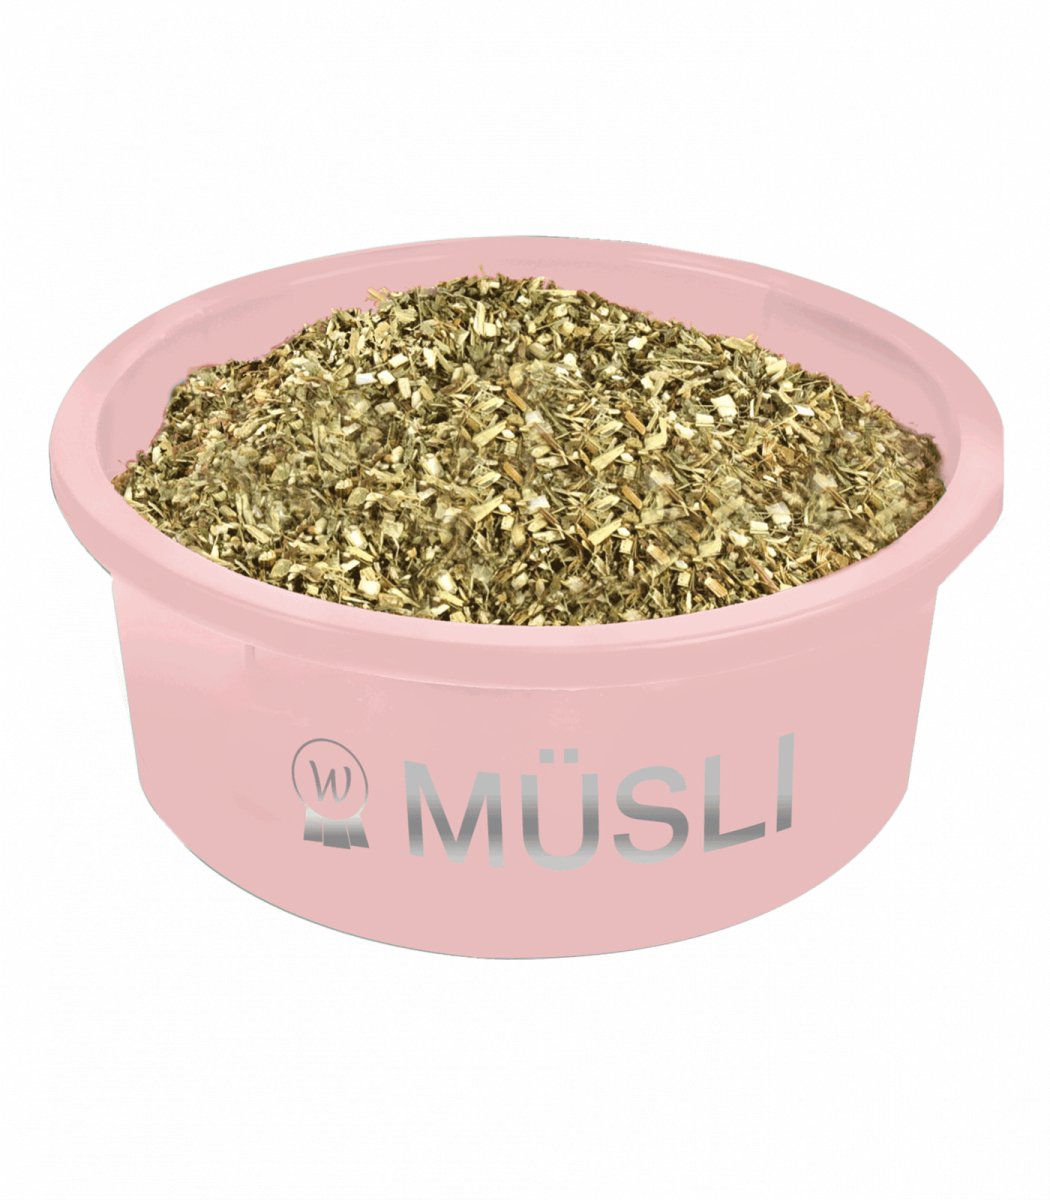 Billede af Muesli Bowl, linnea pink, 5 L